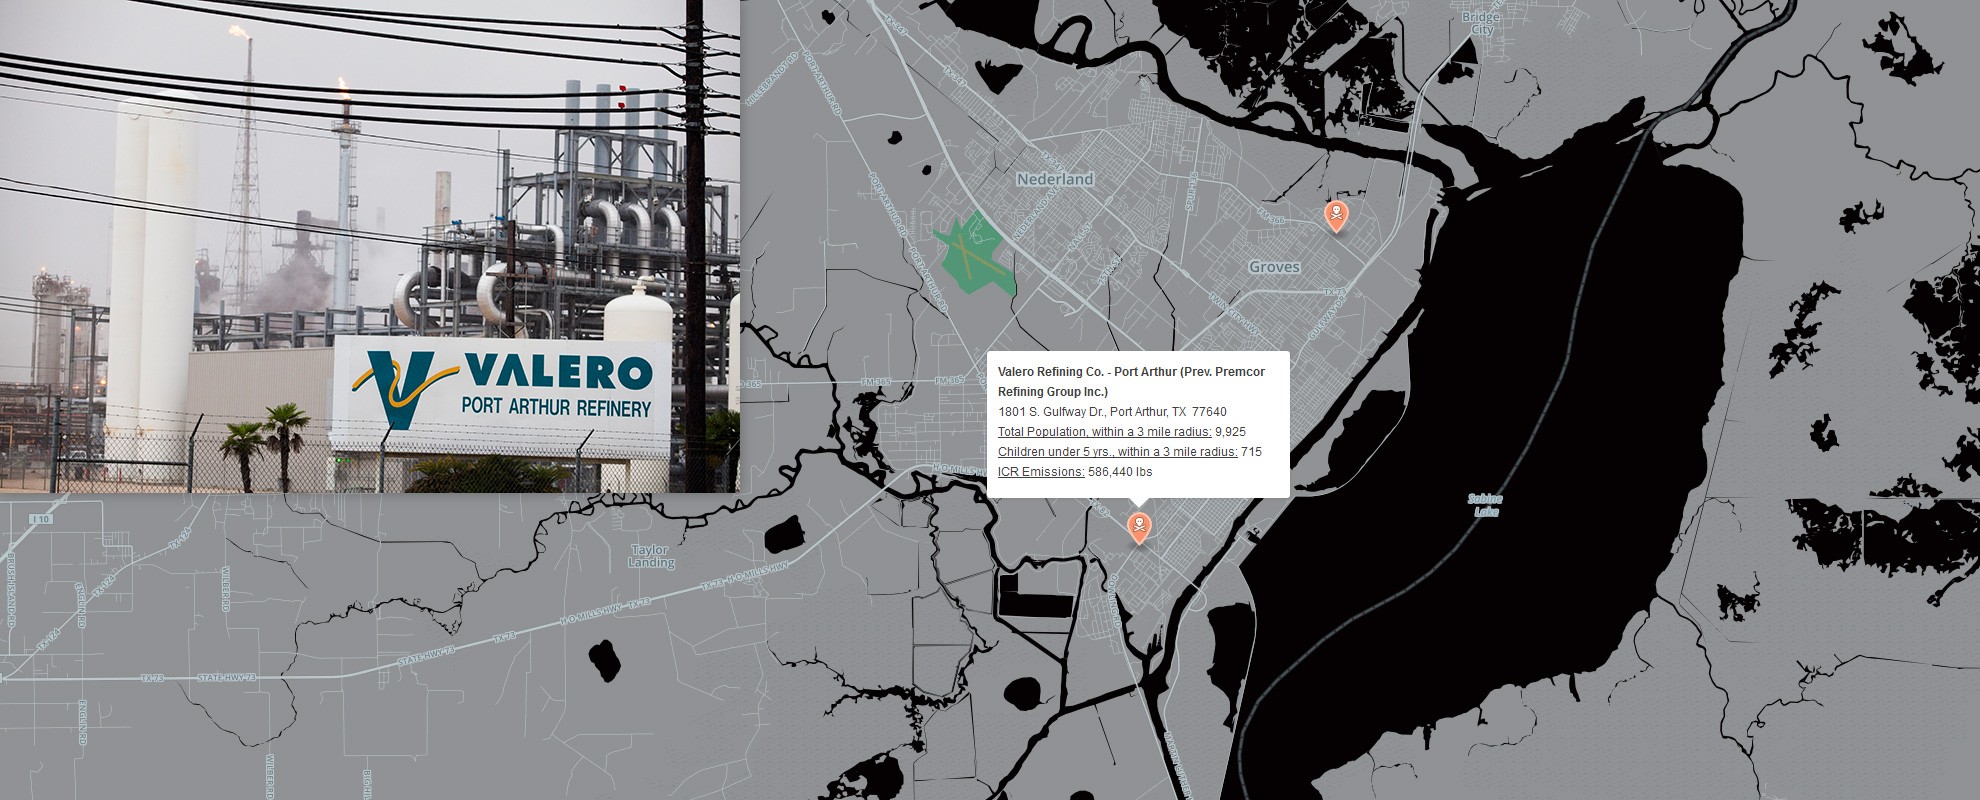 The Valero oil refinery, Nov. 21, 2013 in Port Arthur, TX.